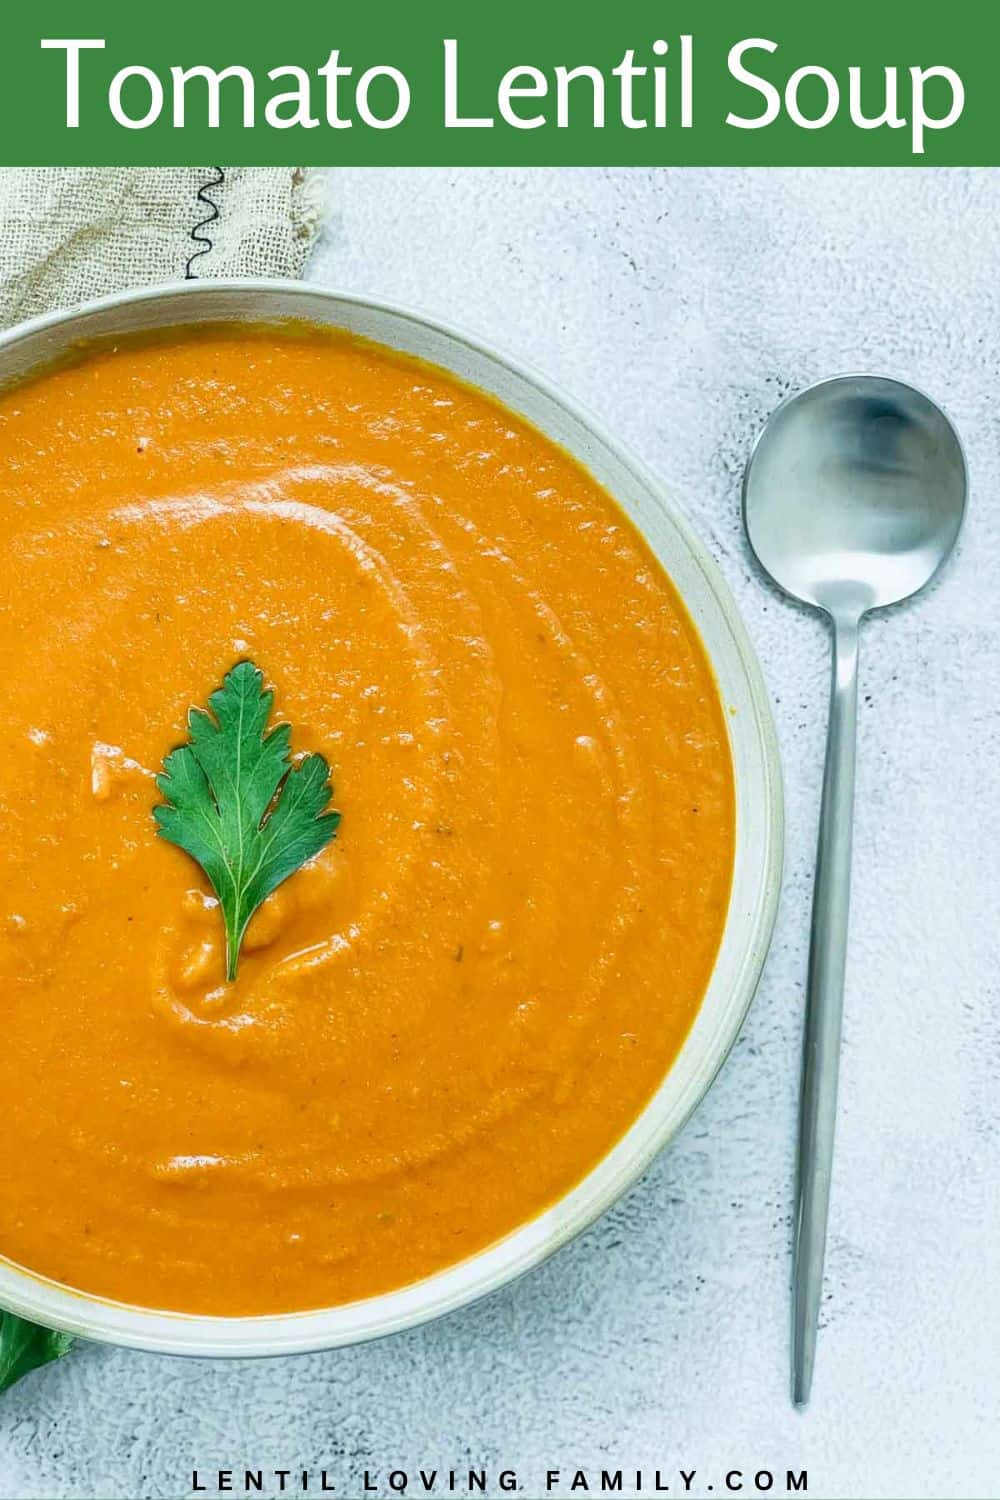 Tomato lentil soup Pinterest image.